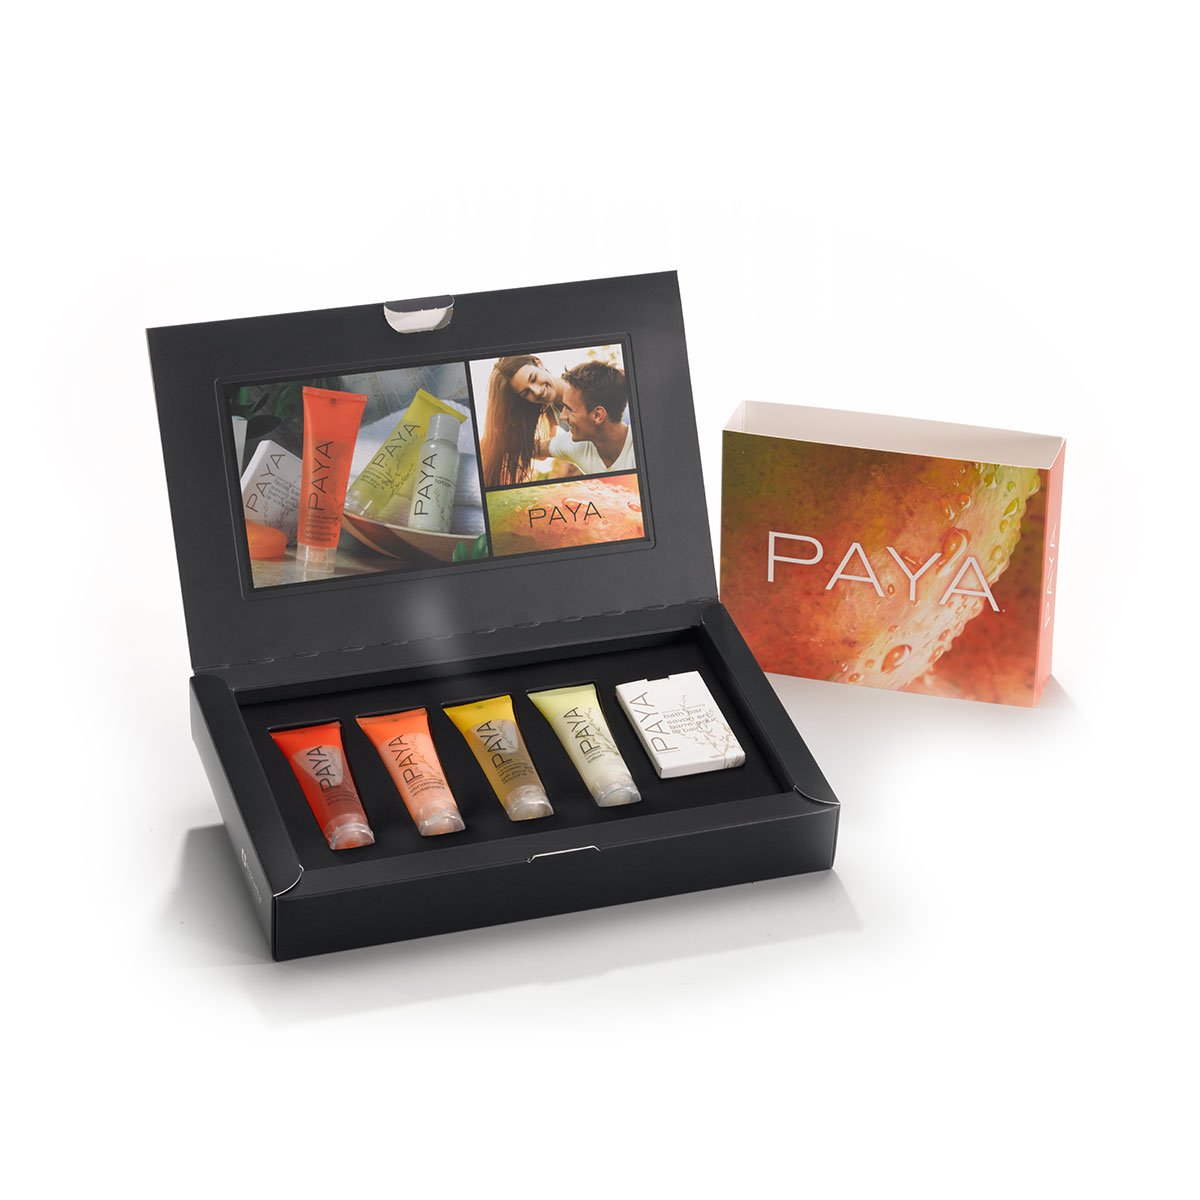 Paya makeup packaging